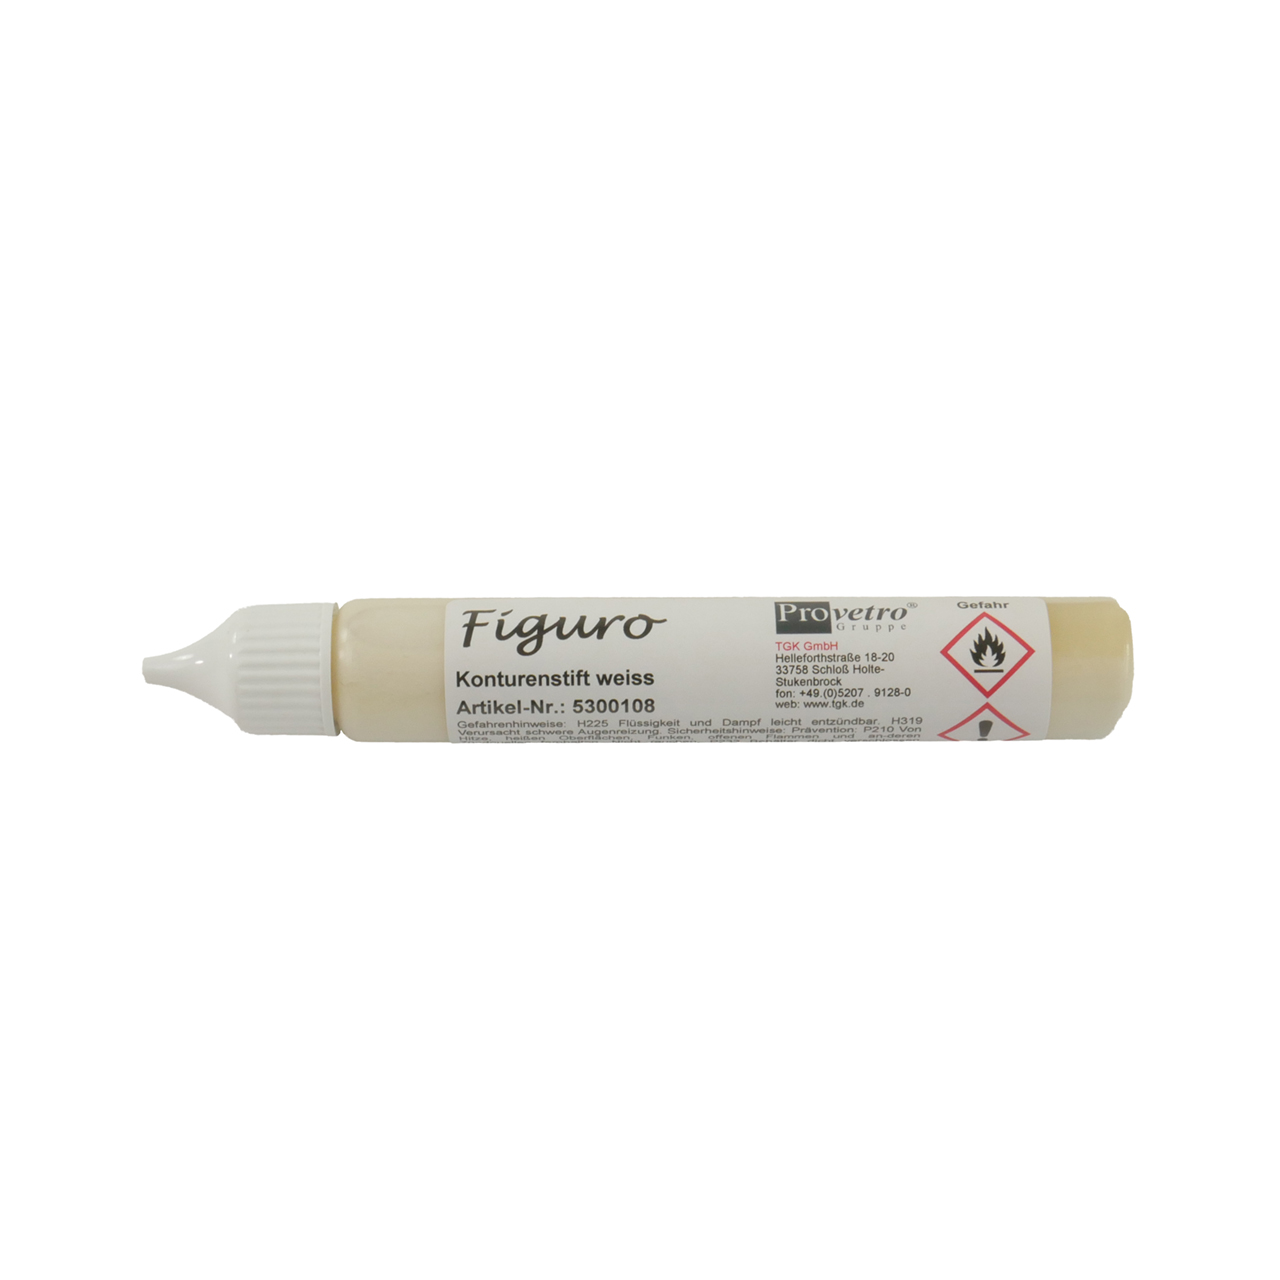 FIGURO contour line pen white